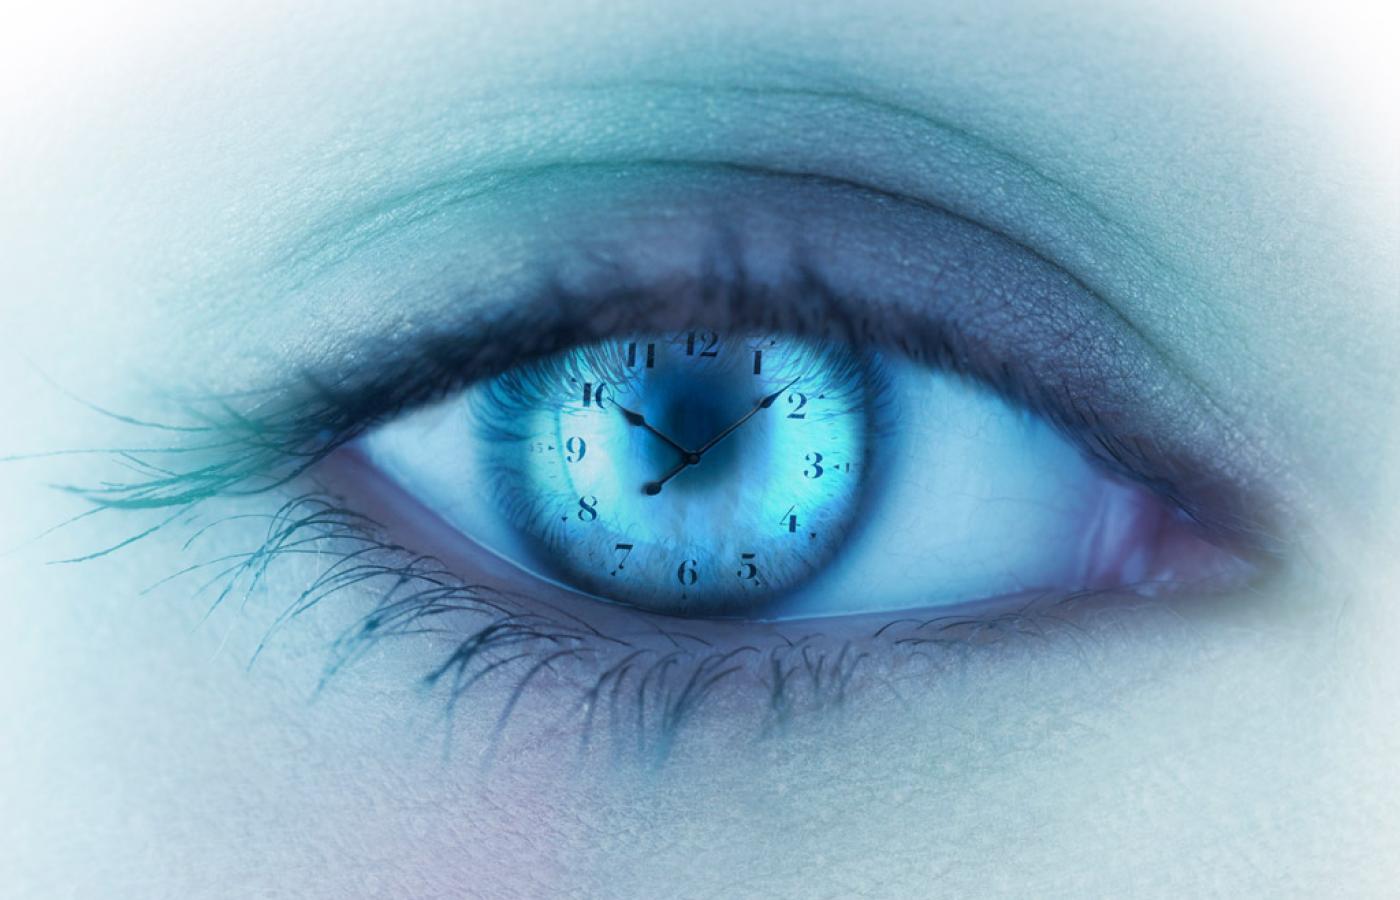 Niebieskie światło emitowane przez monitory zaburza działanie wewnętrznego zegara – imituje poranek, więc kora mózgowa wzmaga swoją czujność i zachowuje się tak, jakby właśnie zaczynał się dzień.